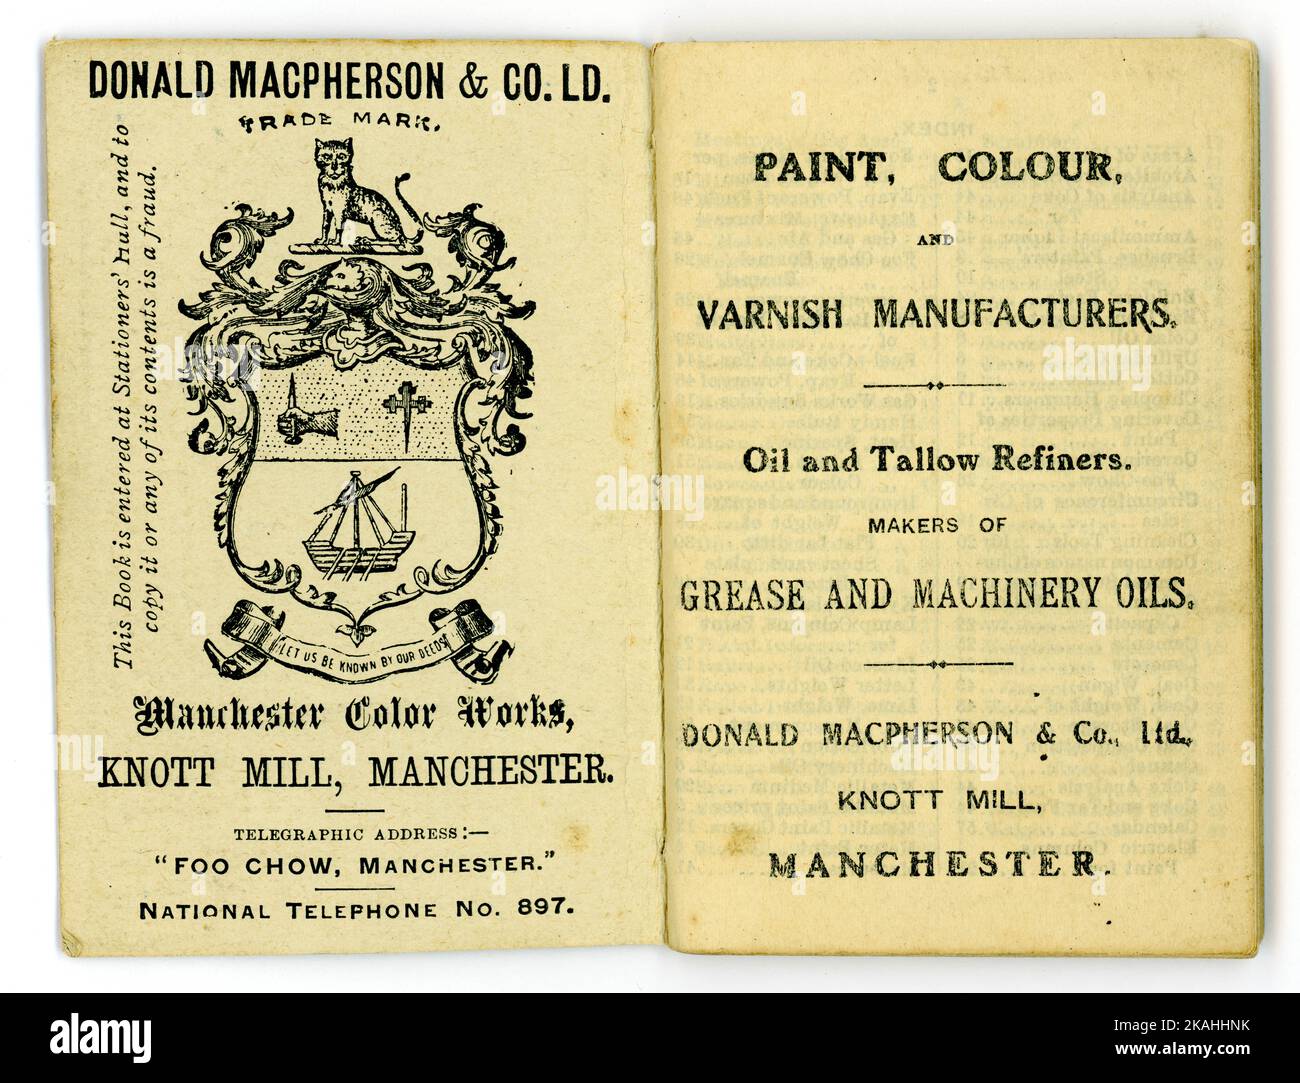 Page intérieure originale du journal de Donald Macpherson & Co Ltd Fabricants d'huiles peintures couleurs et vernis, Knott Mill, Manchester, U.K daté de 1909. Banque D'Images